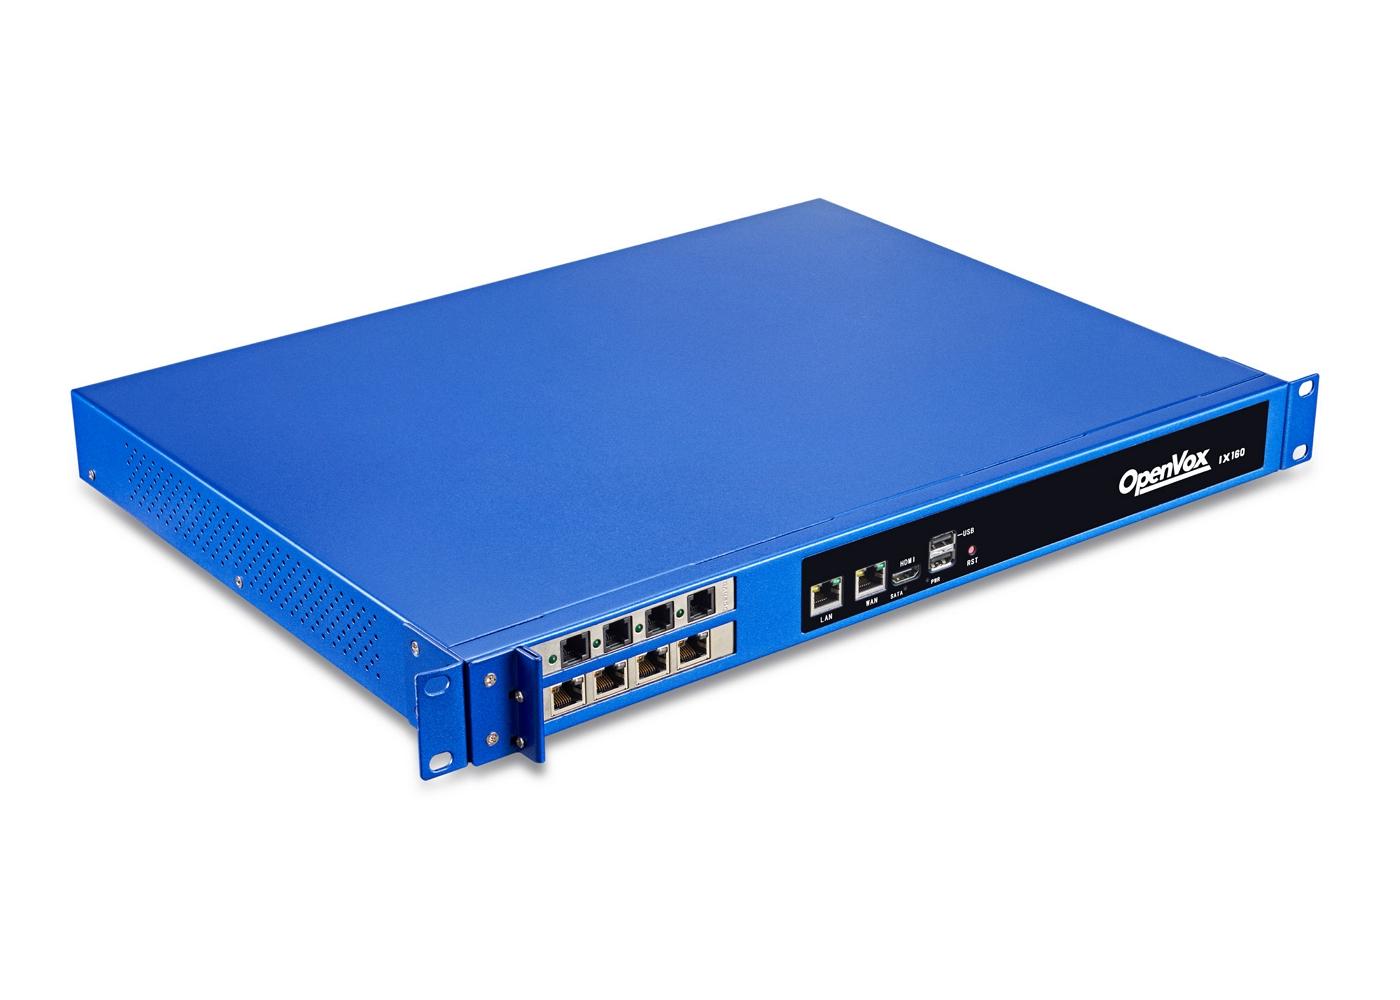 Openvox IX160 Asterisk N2930 4G RAM 240G SSD 1U Rack PBX Appliance